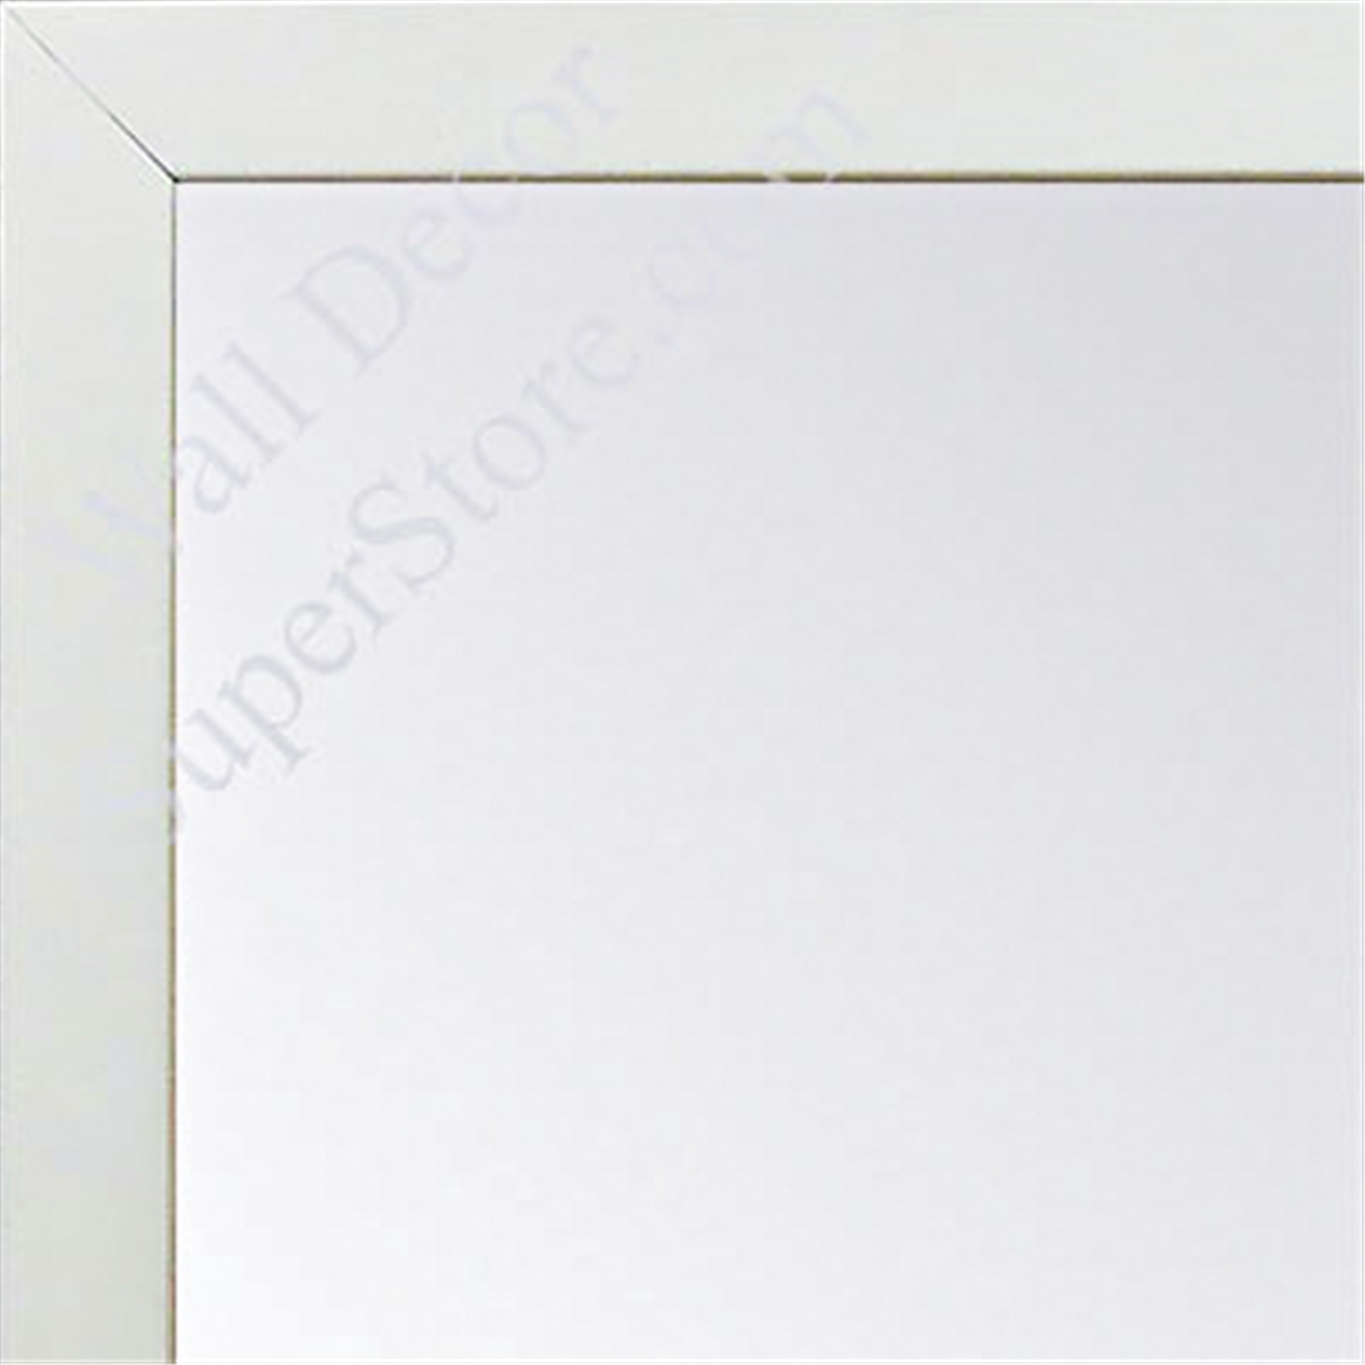 MR1544-8 White - 3/4 Inch Wide X 1 1/4 Inch High - Custom Wall Mirror - Custom Bathroom Mirror